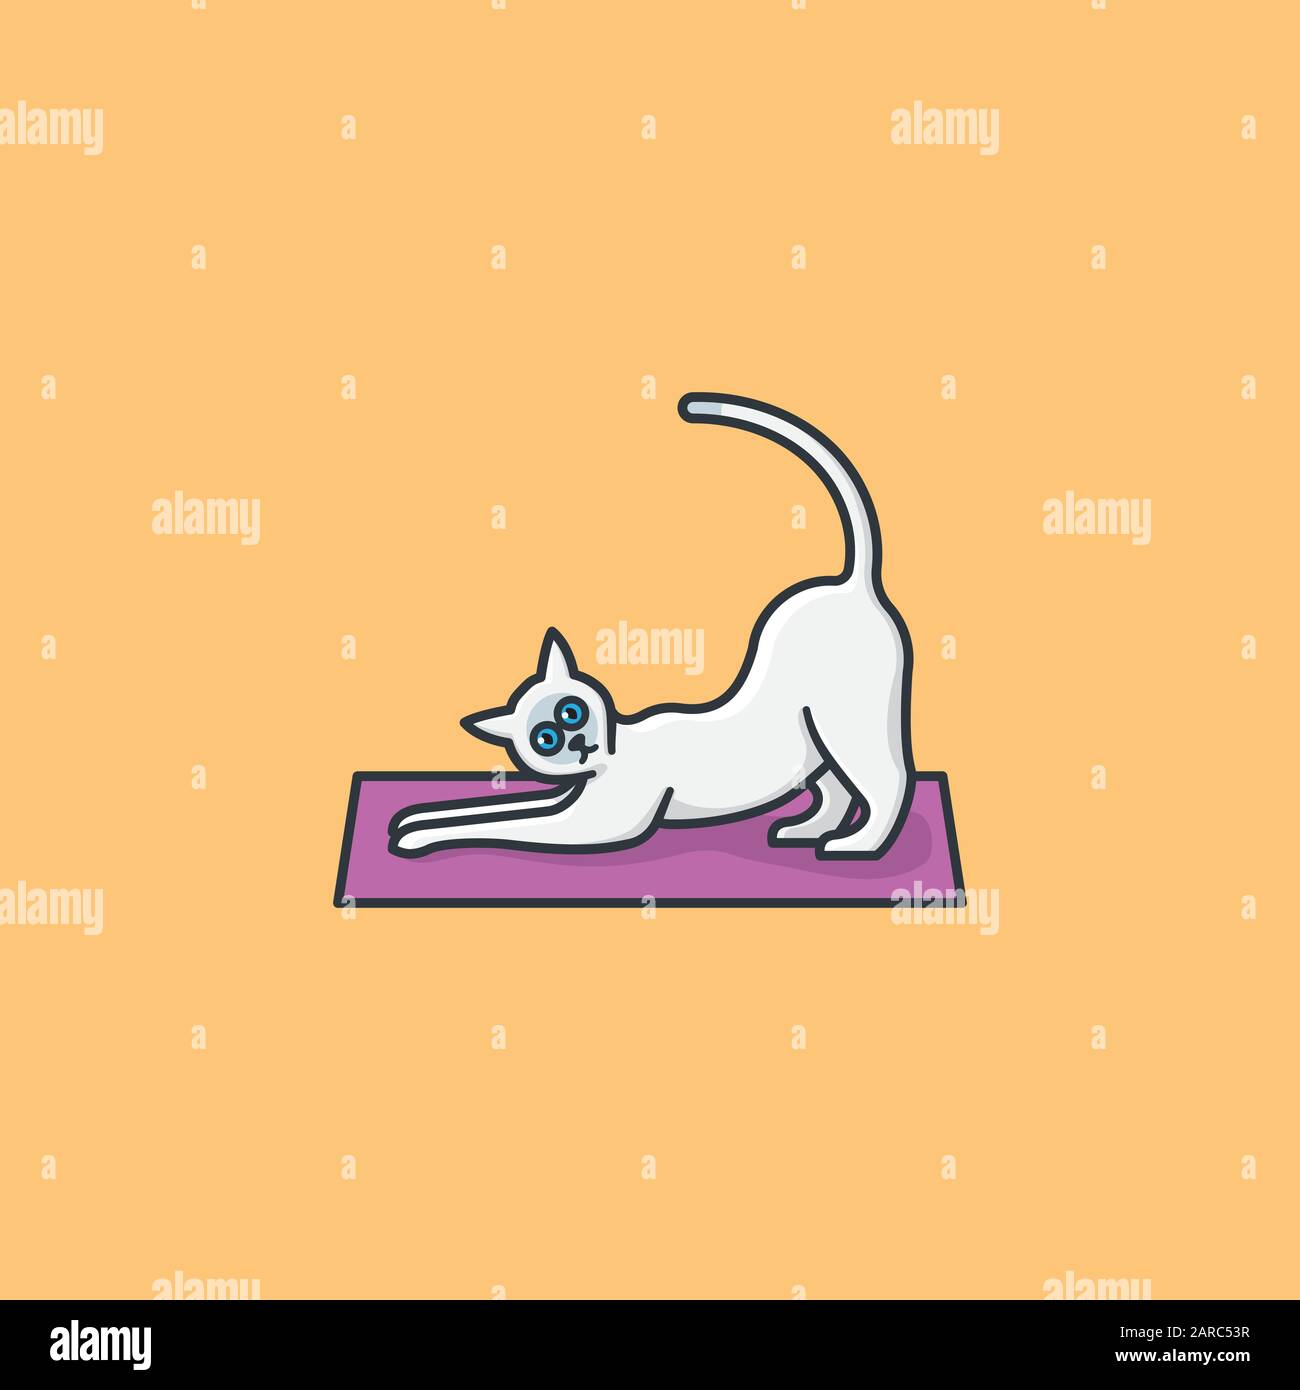 Stretching siamkatze auf Yogamatten-Vektorgrafiken für #YogaDay am 22. Februar. Symbol für häusliche Tier- und asiatische Trainingsfarbe Stock Vektor